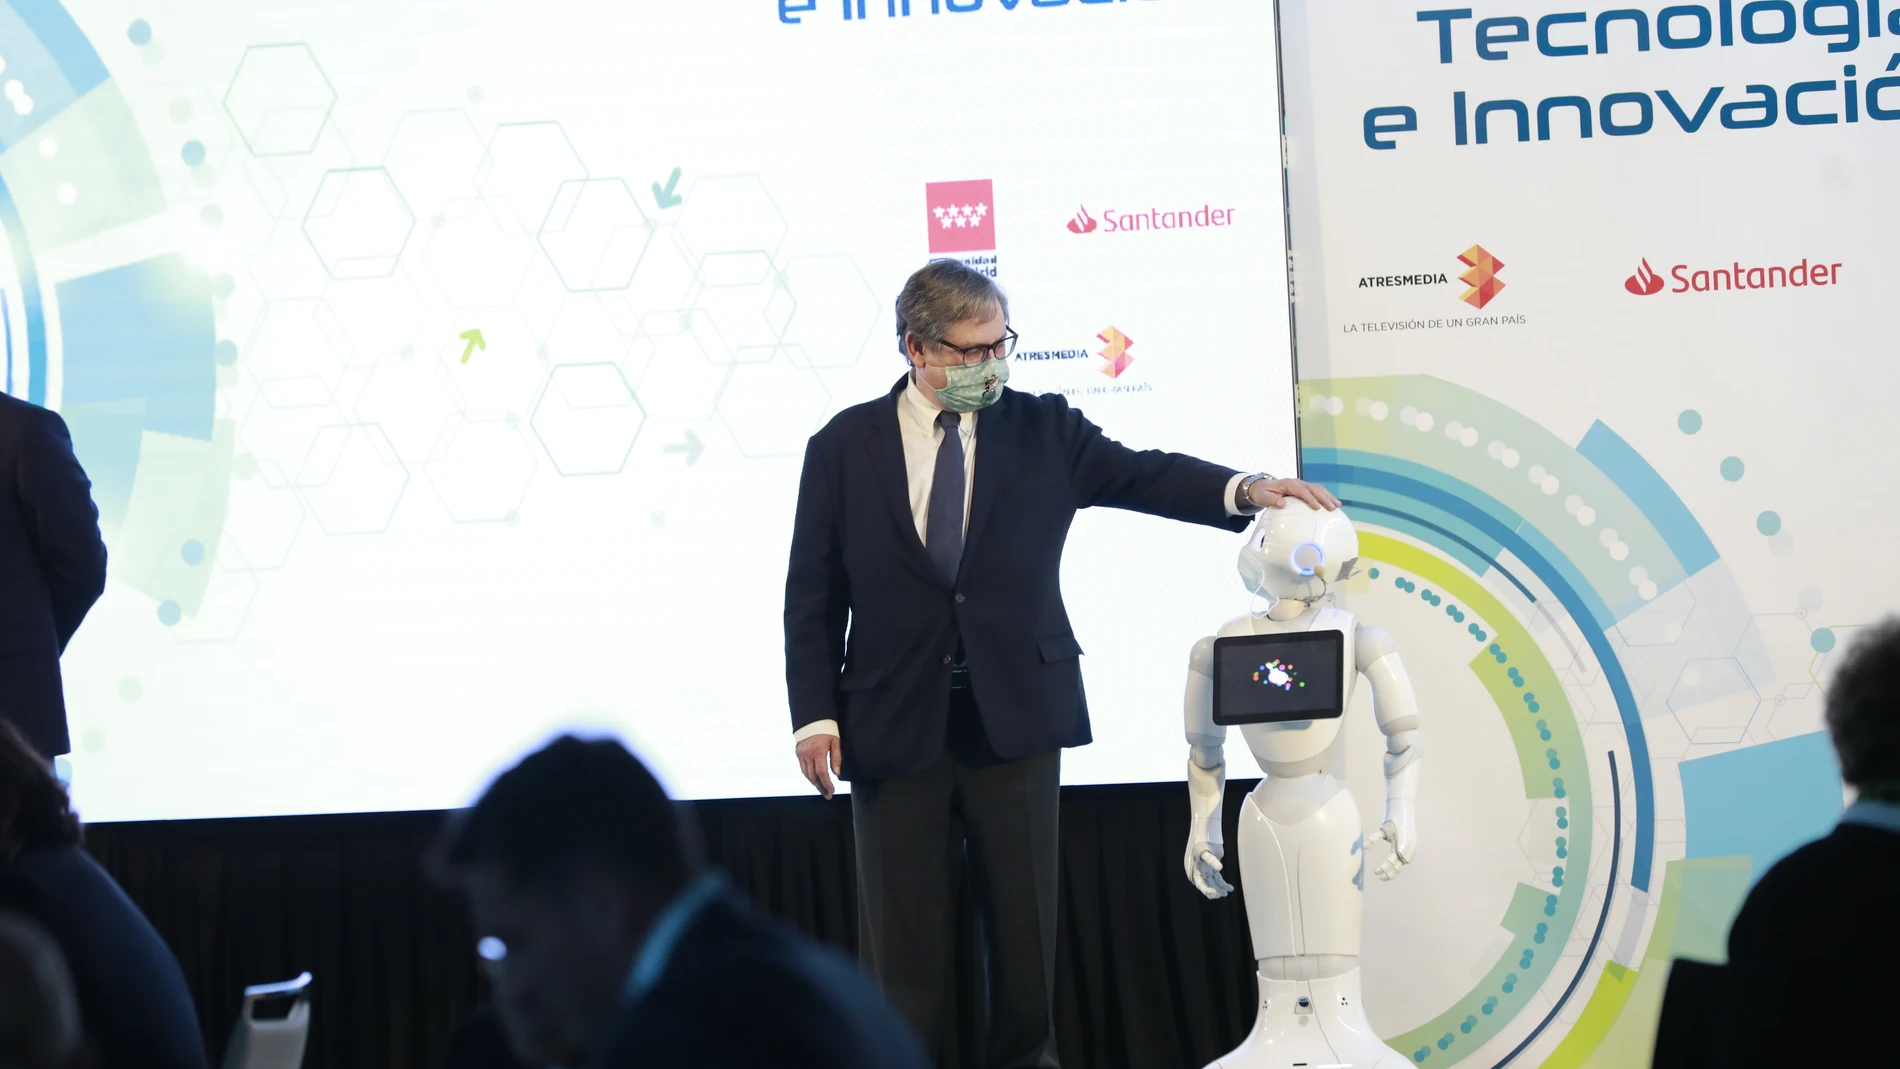 El director del periódico, Francisco Marhuenda, junto al robot "Pepper" en los Premios Tecnología e Innovación